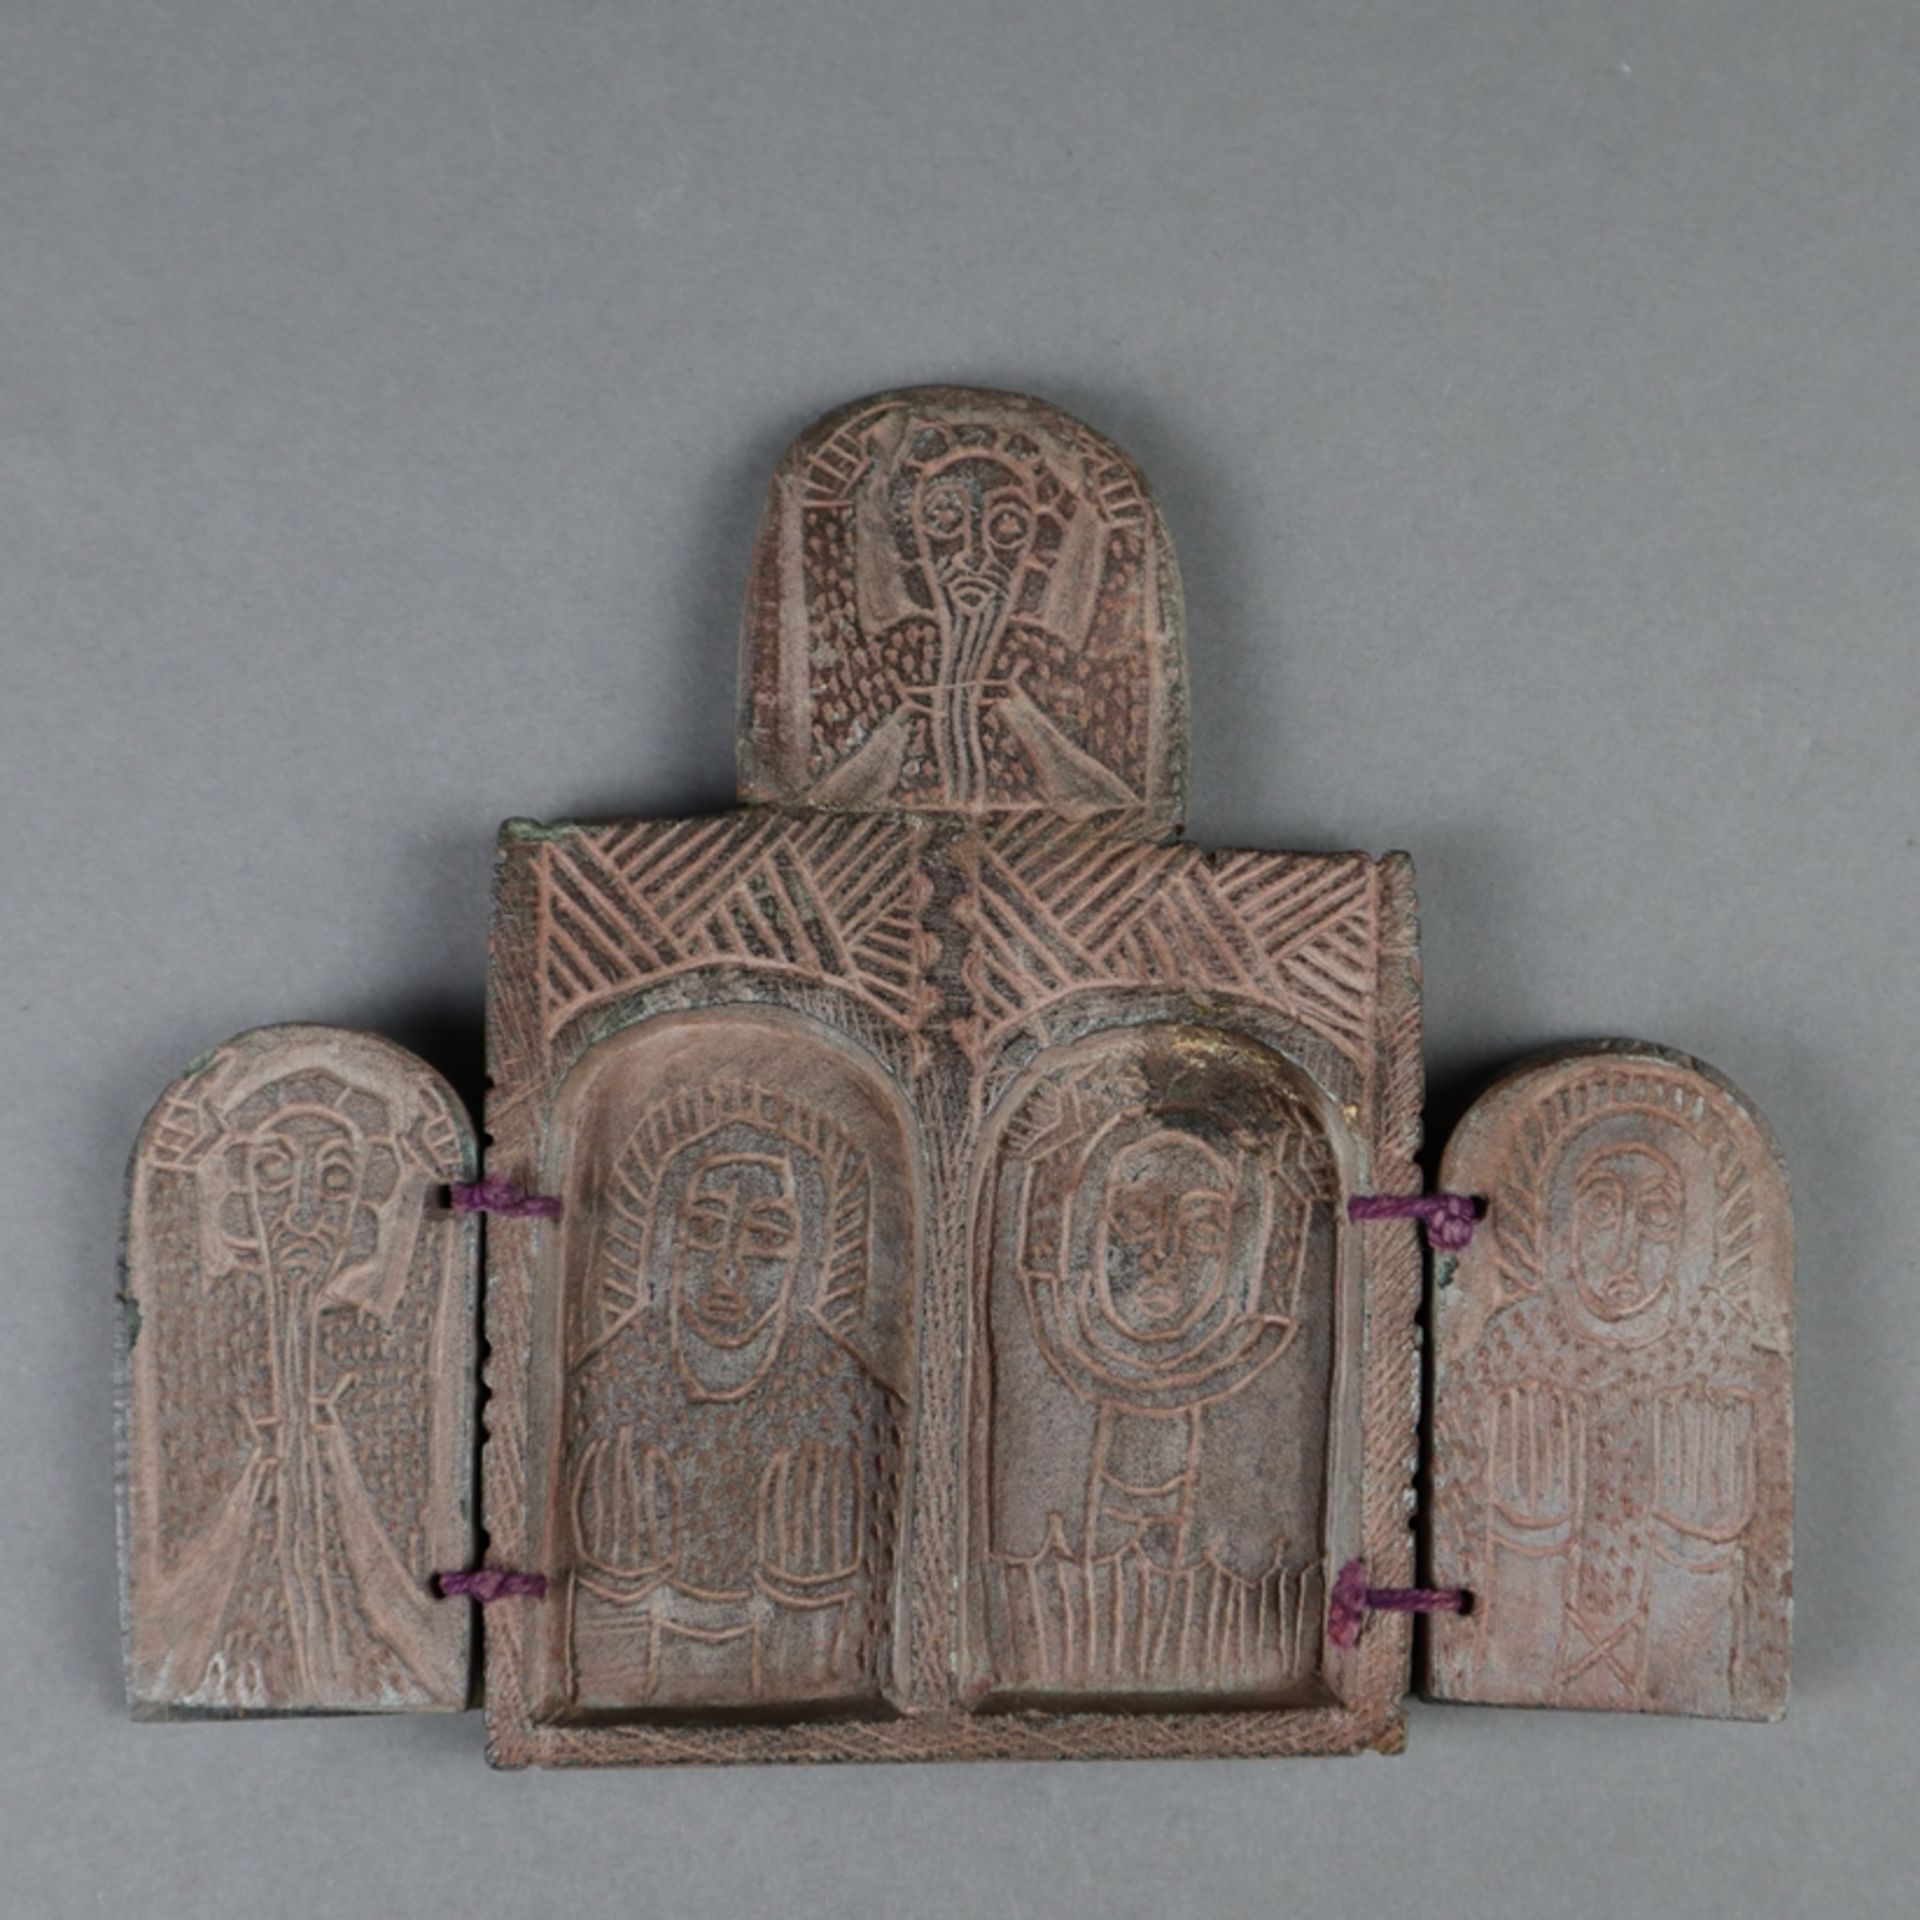 Koptischer Reisealtar - rötlicher Ton, Sgraffito-Dekor, beidseitig je 2 Flügeltüren, außen - Bild 2 aus 7